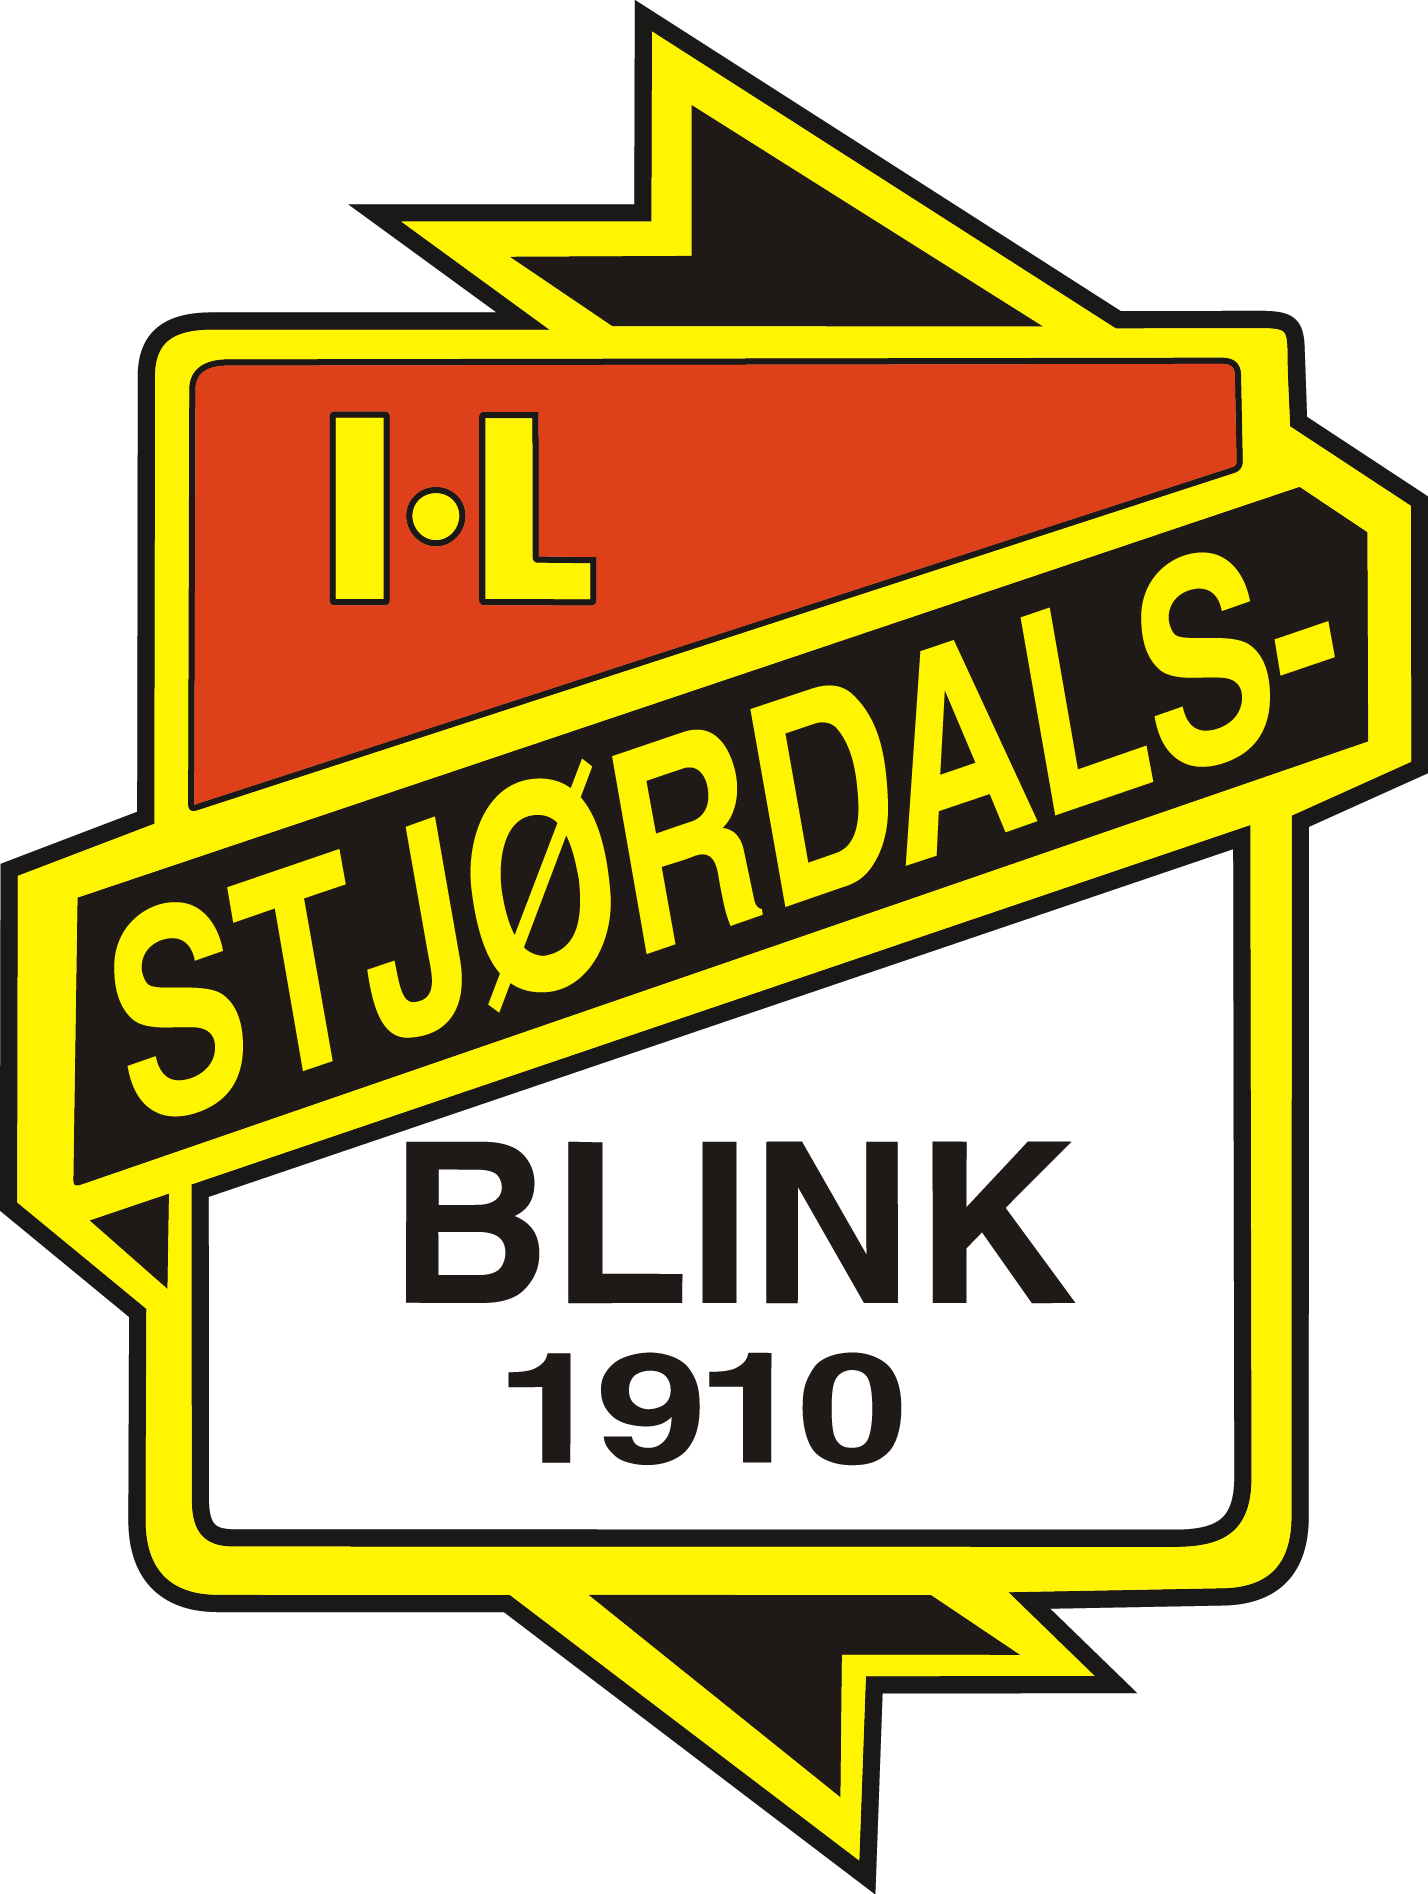 Stjordals-Blink logo